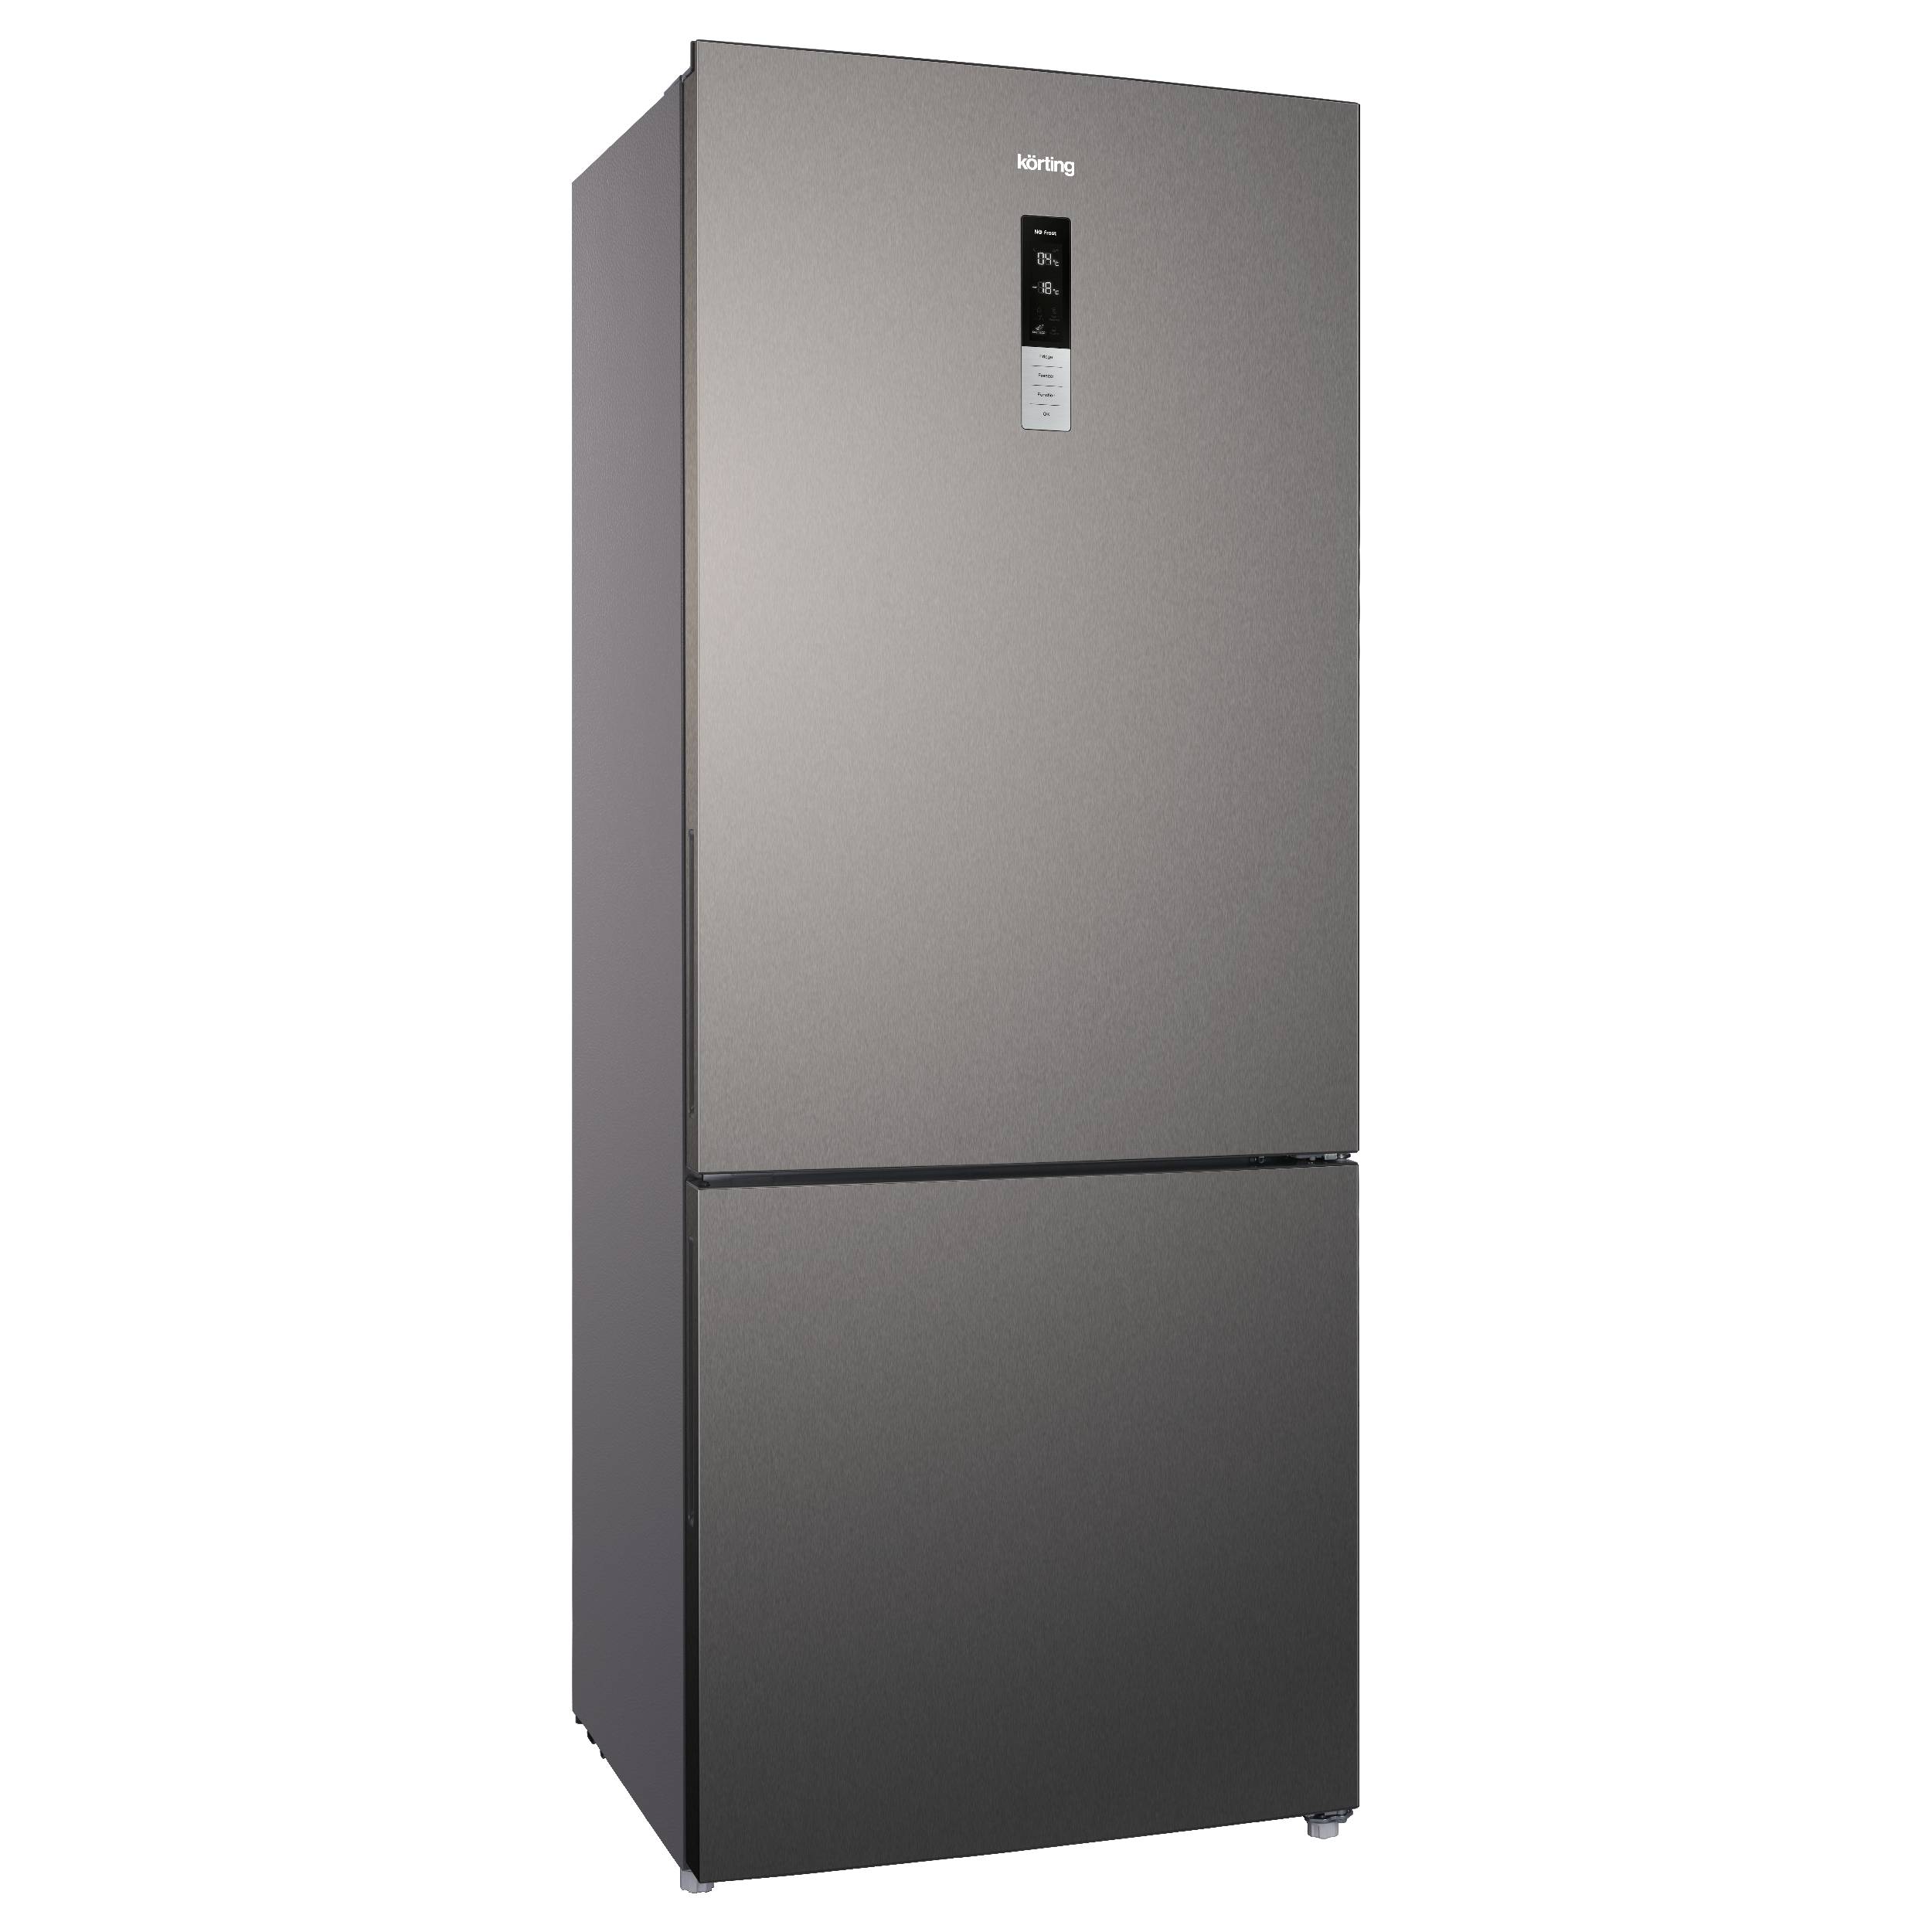 Холодильник Korting KNFC 72337 X серебристый, серый термостакан здесь и сейчас 250 мл